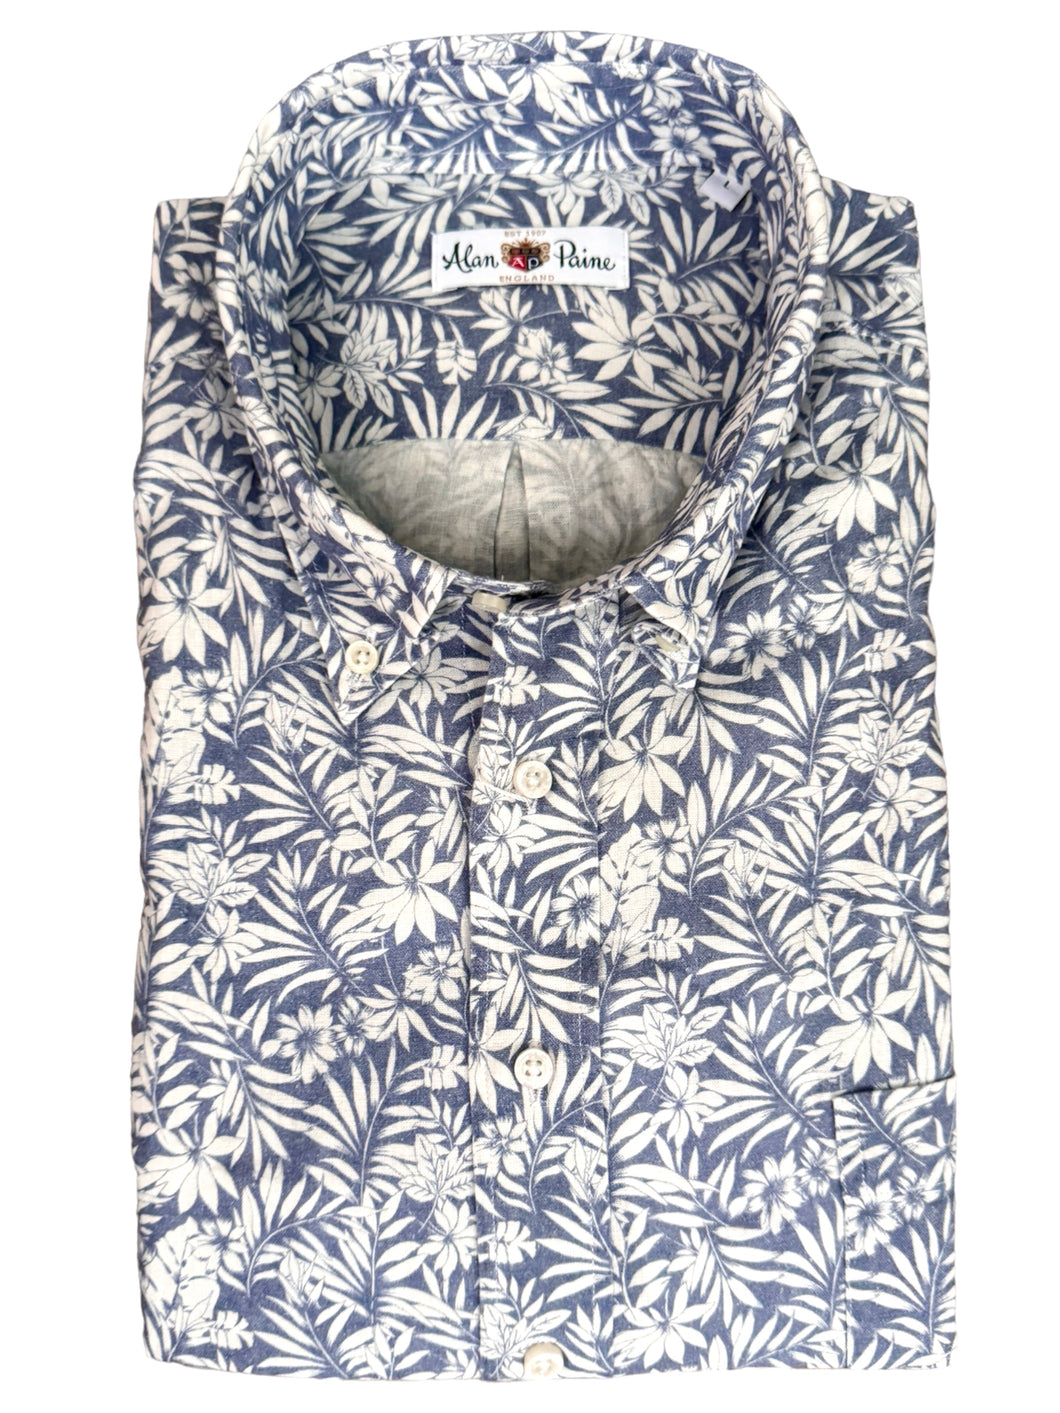 Alan Paine Kingford SS linen blend BD Shirt Blue floral